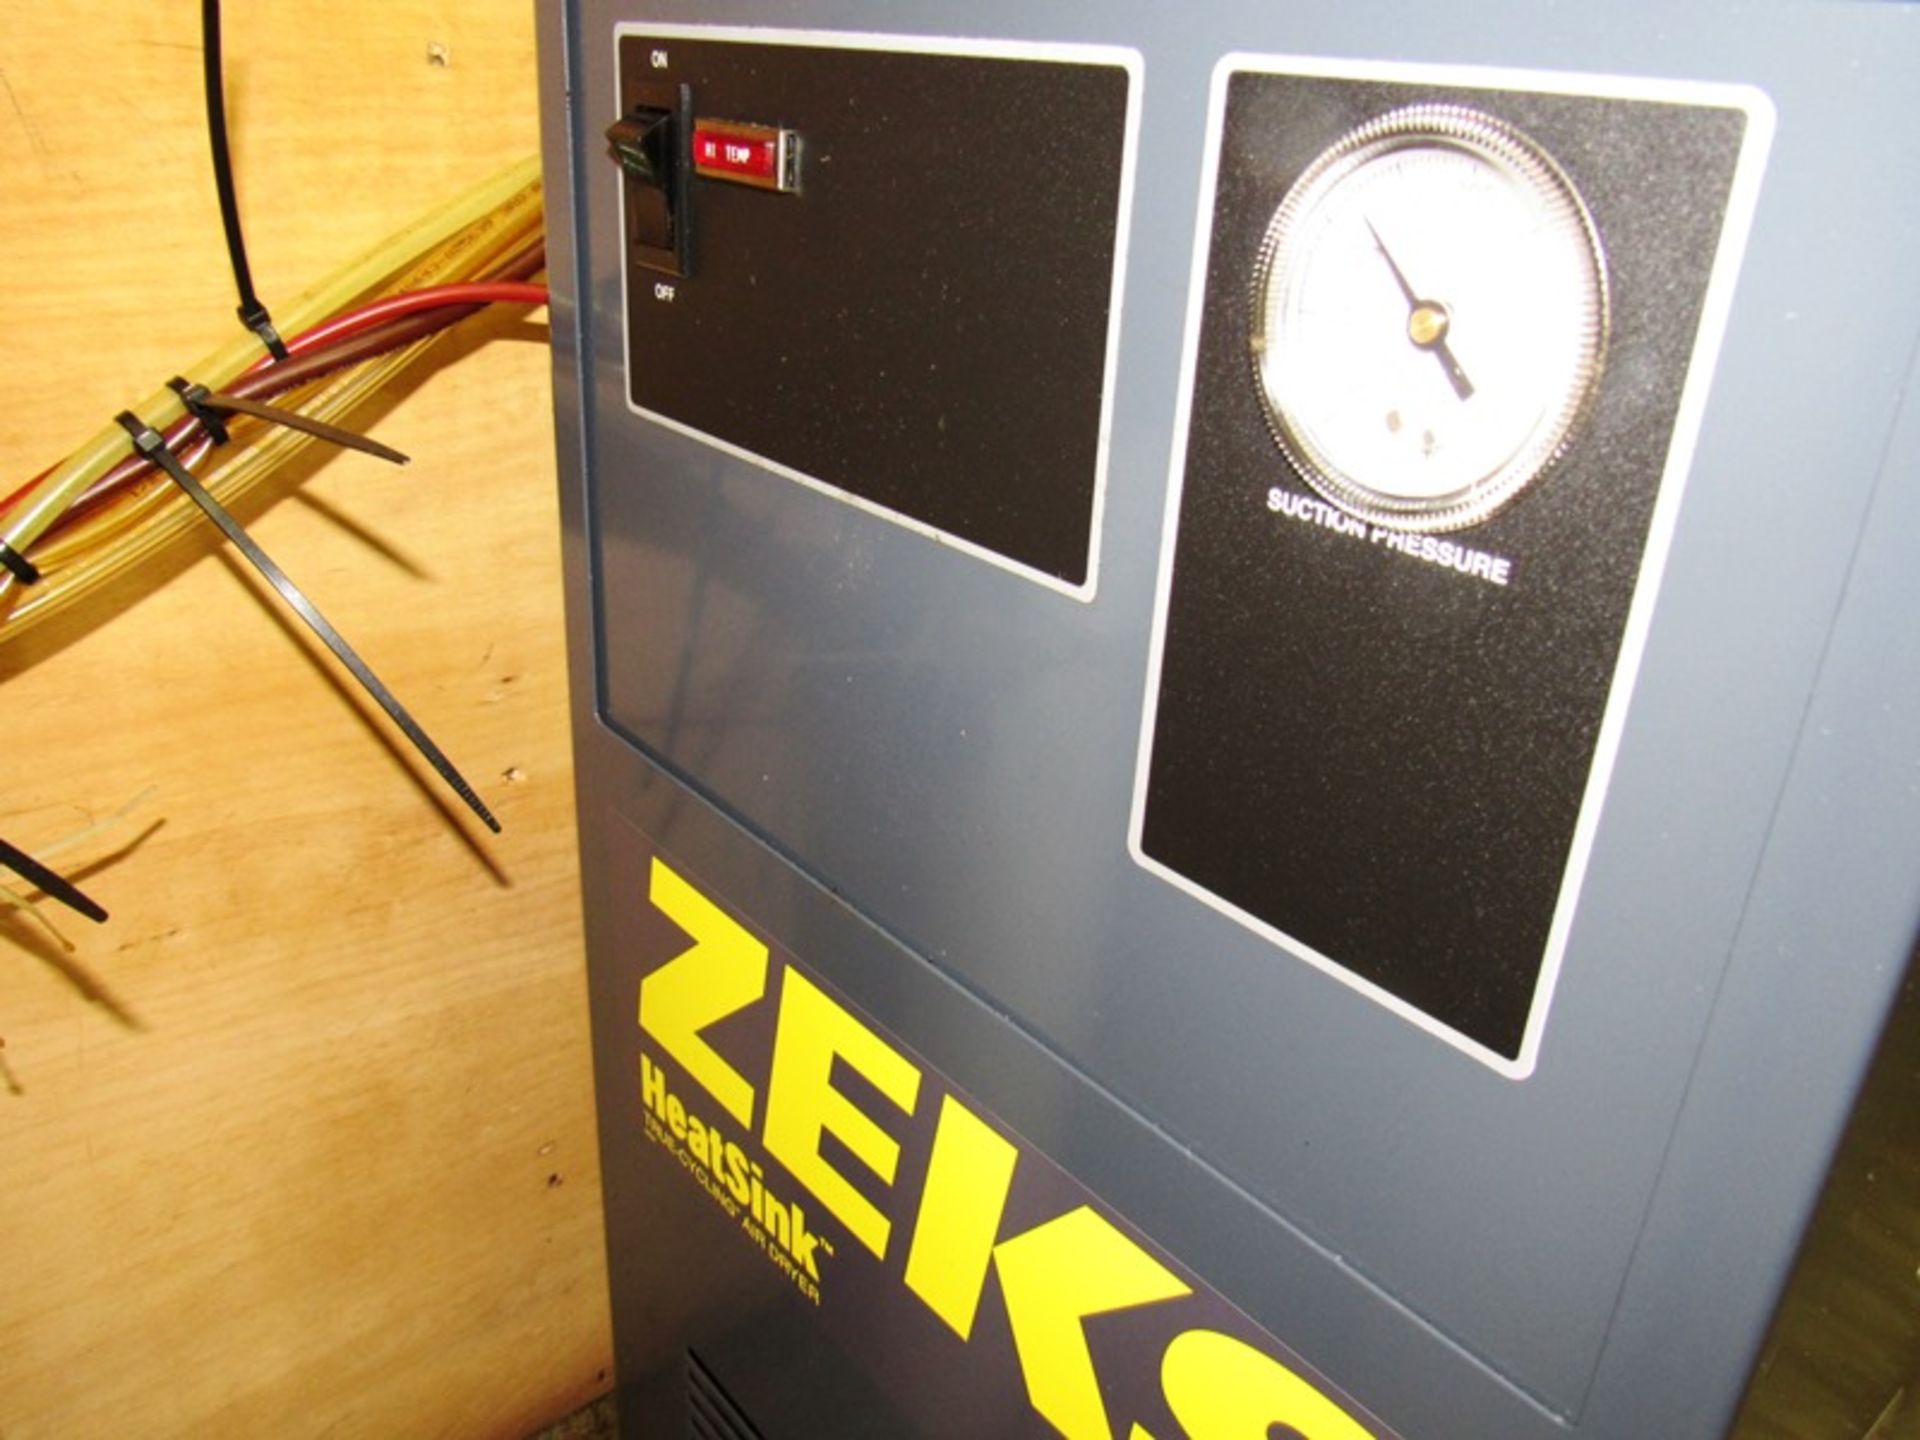 Zeks Mdl. 100HSGA100 Compressed Air Dryer, Ser. #245971M105 (Removal Begins July 5th) Loading Fee $ - Image 2 of 3